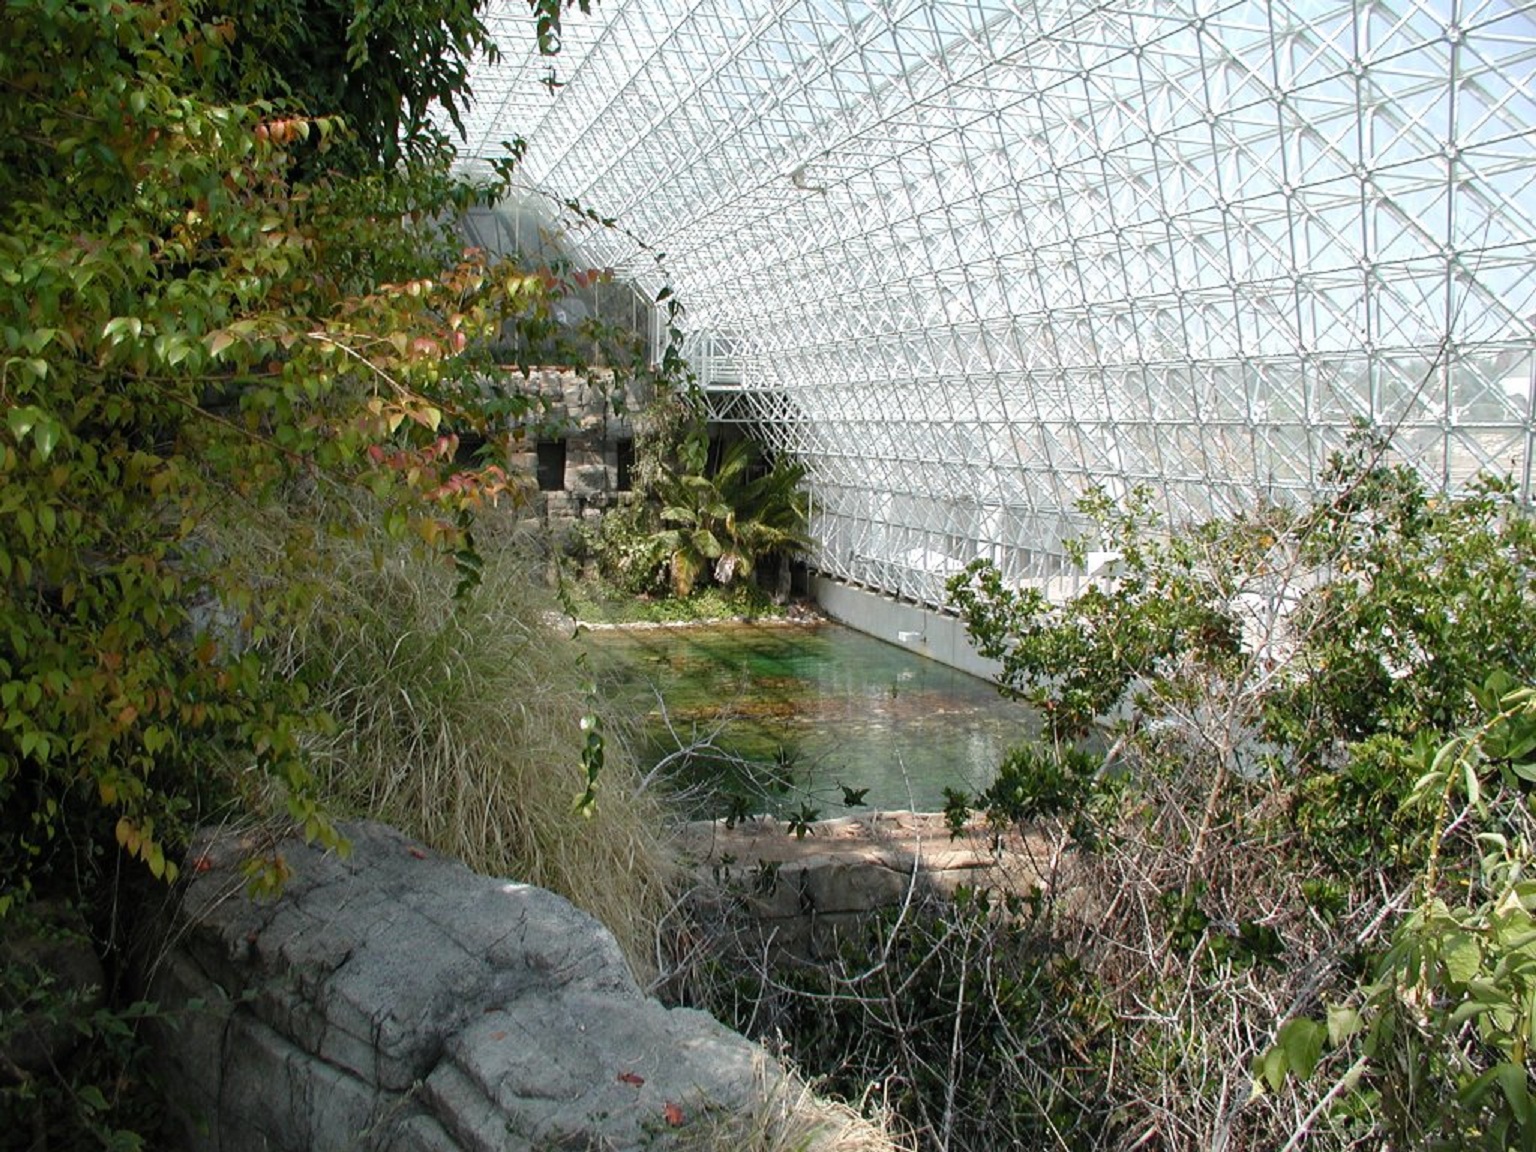 Biosphere2 por dentro. La vista corresponde a la sabana (en primer plano) y el océano (al fondo). Fuente: Wikipedia.